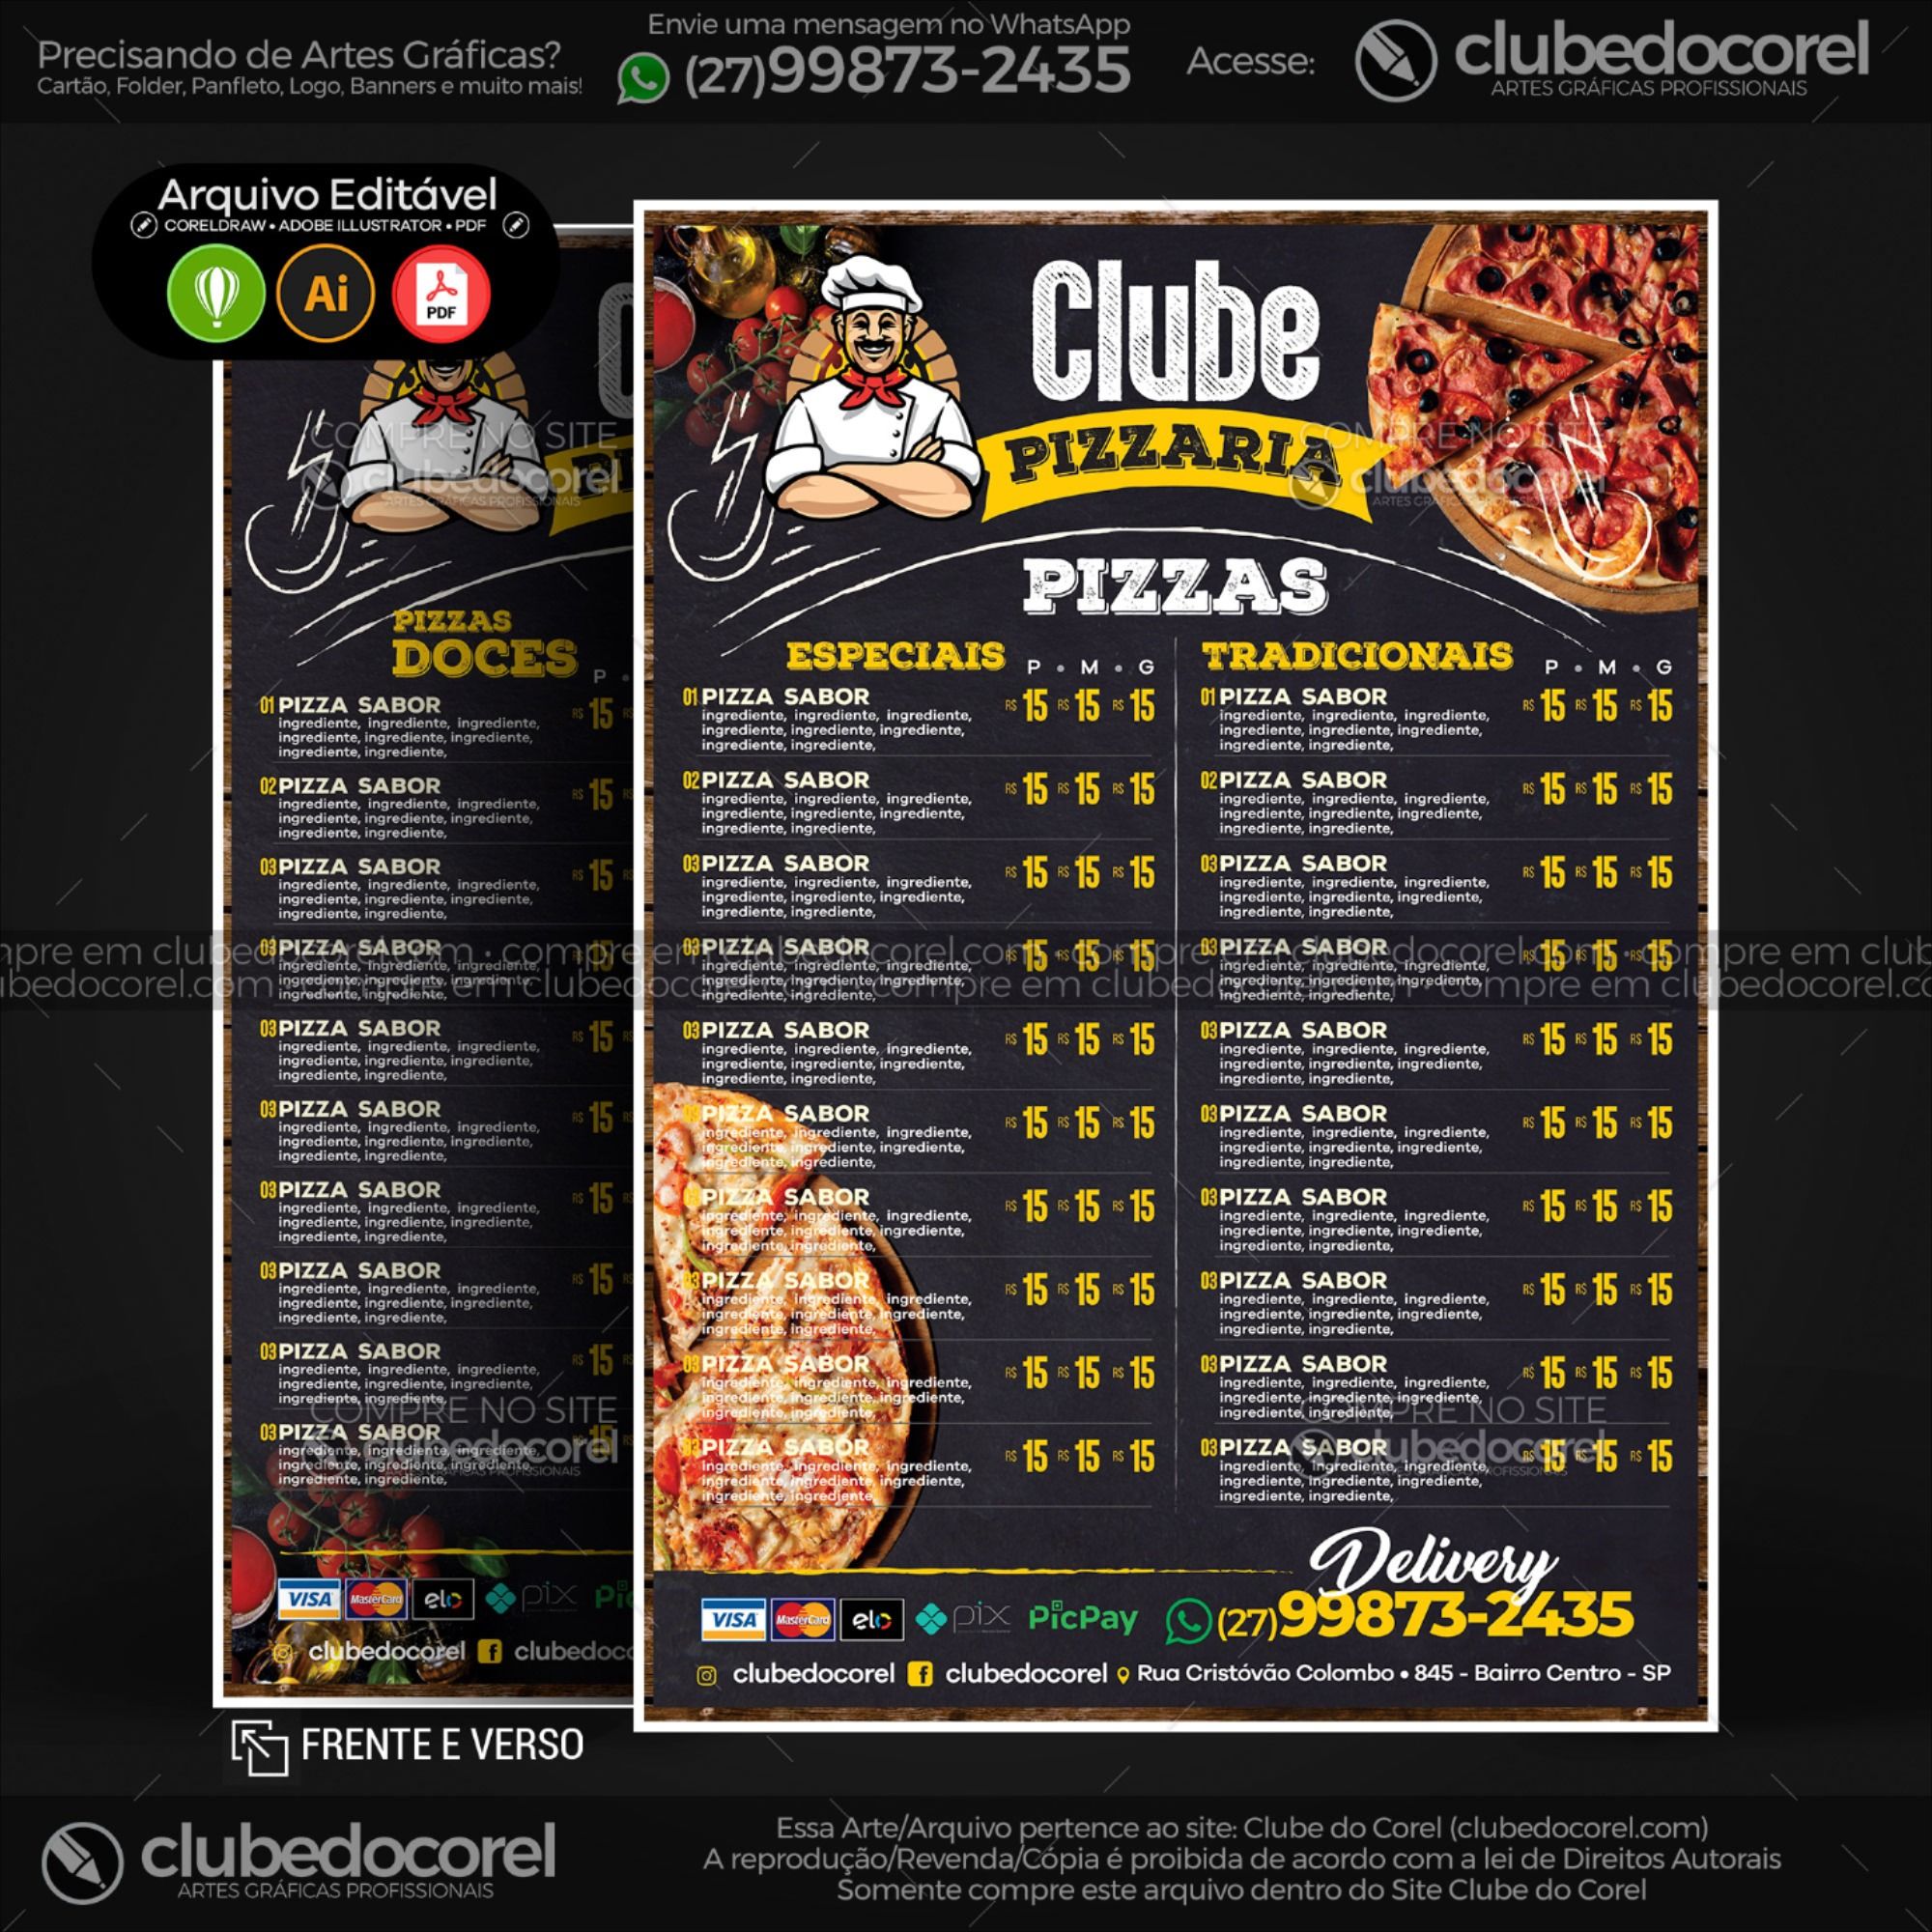 Cardápio Pizzaria - Pizza e Hamburguer (Lanche) - Modelo pronto Editável  #01 [CDR AI PDF] | Clube do Corel | Cardápio pizzaria, Cardapio de pizza,  Cardapio de açai - modelos de cardápio